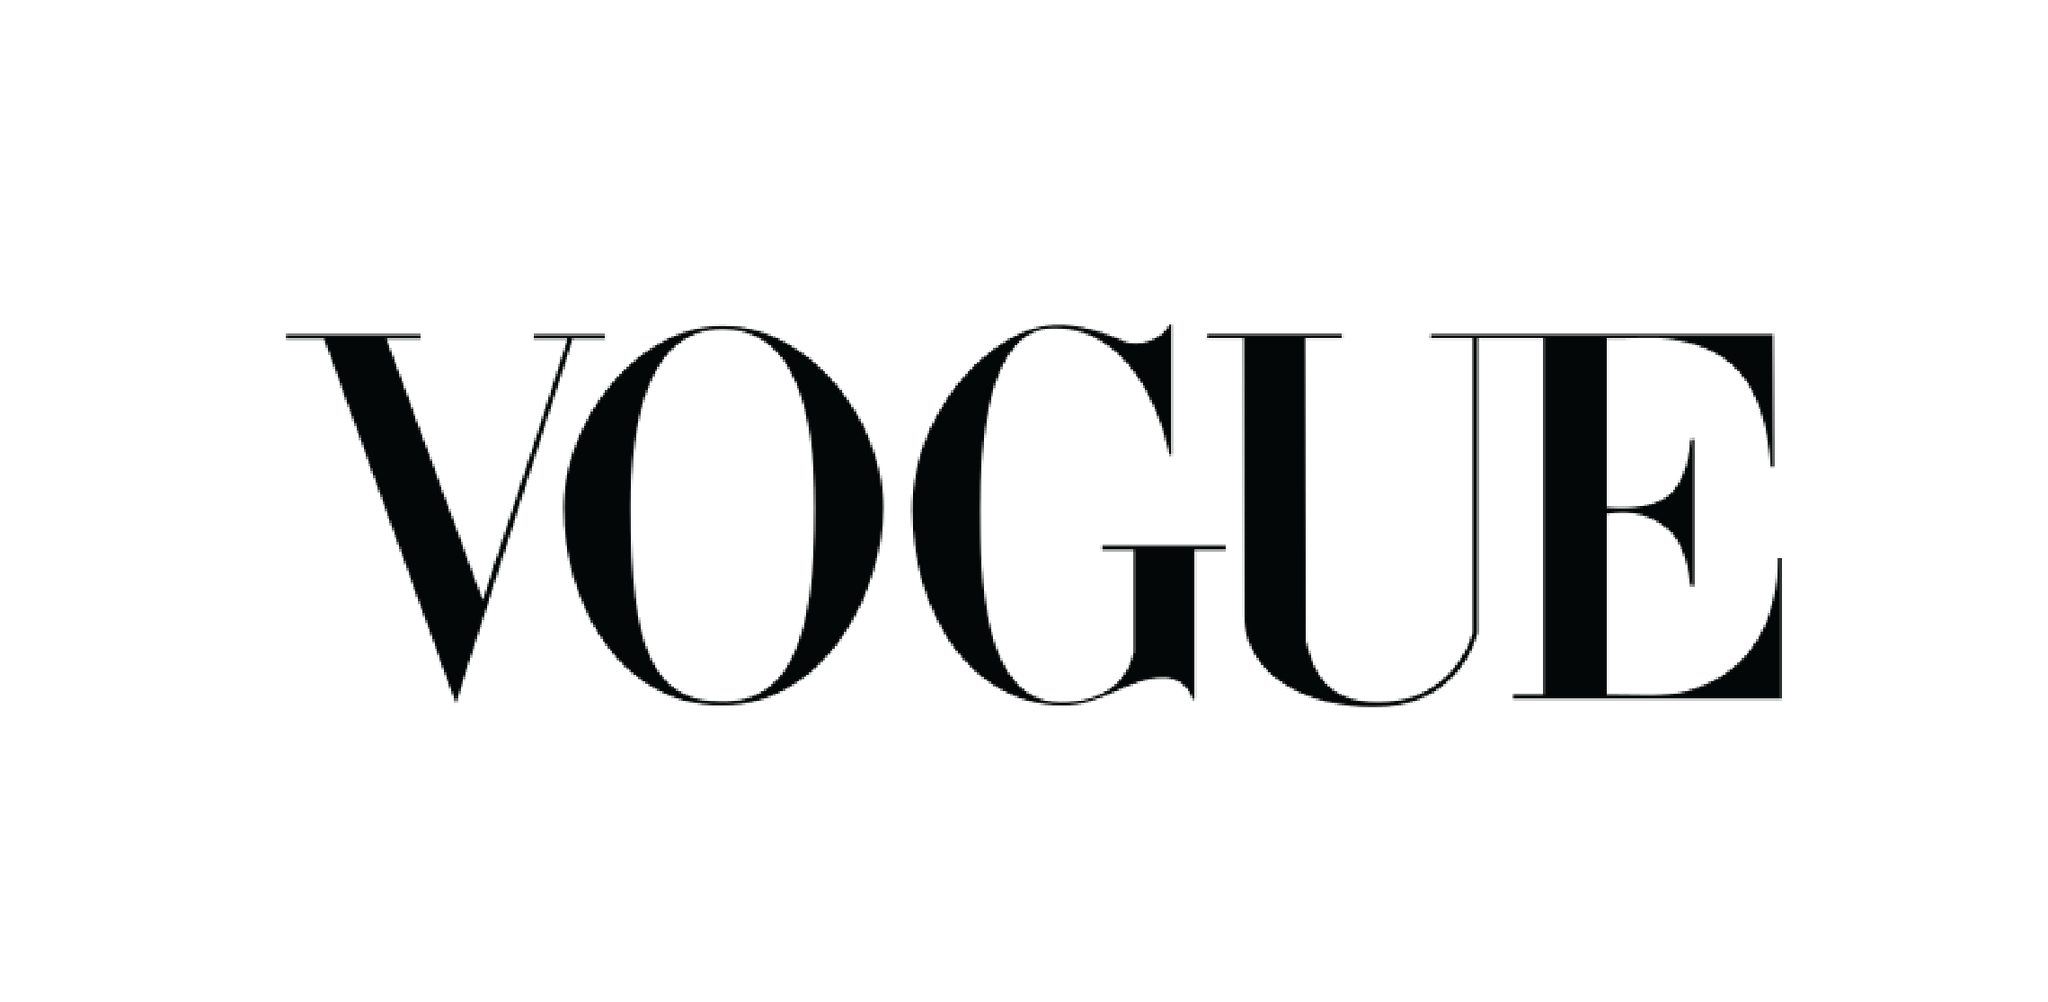 VOGUE Logo